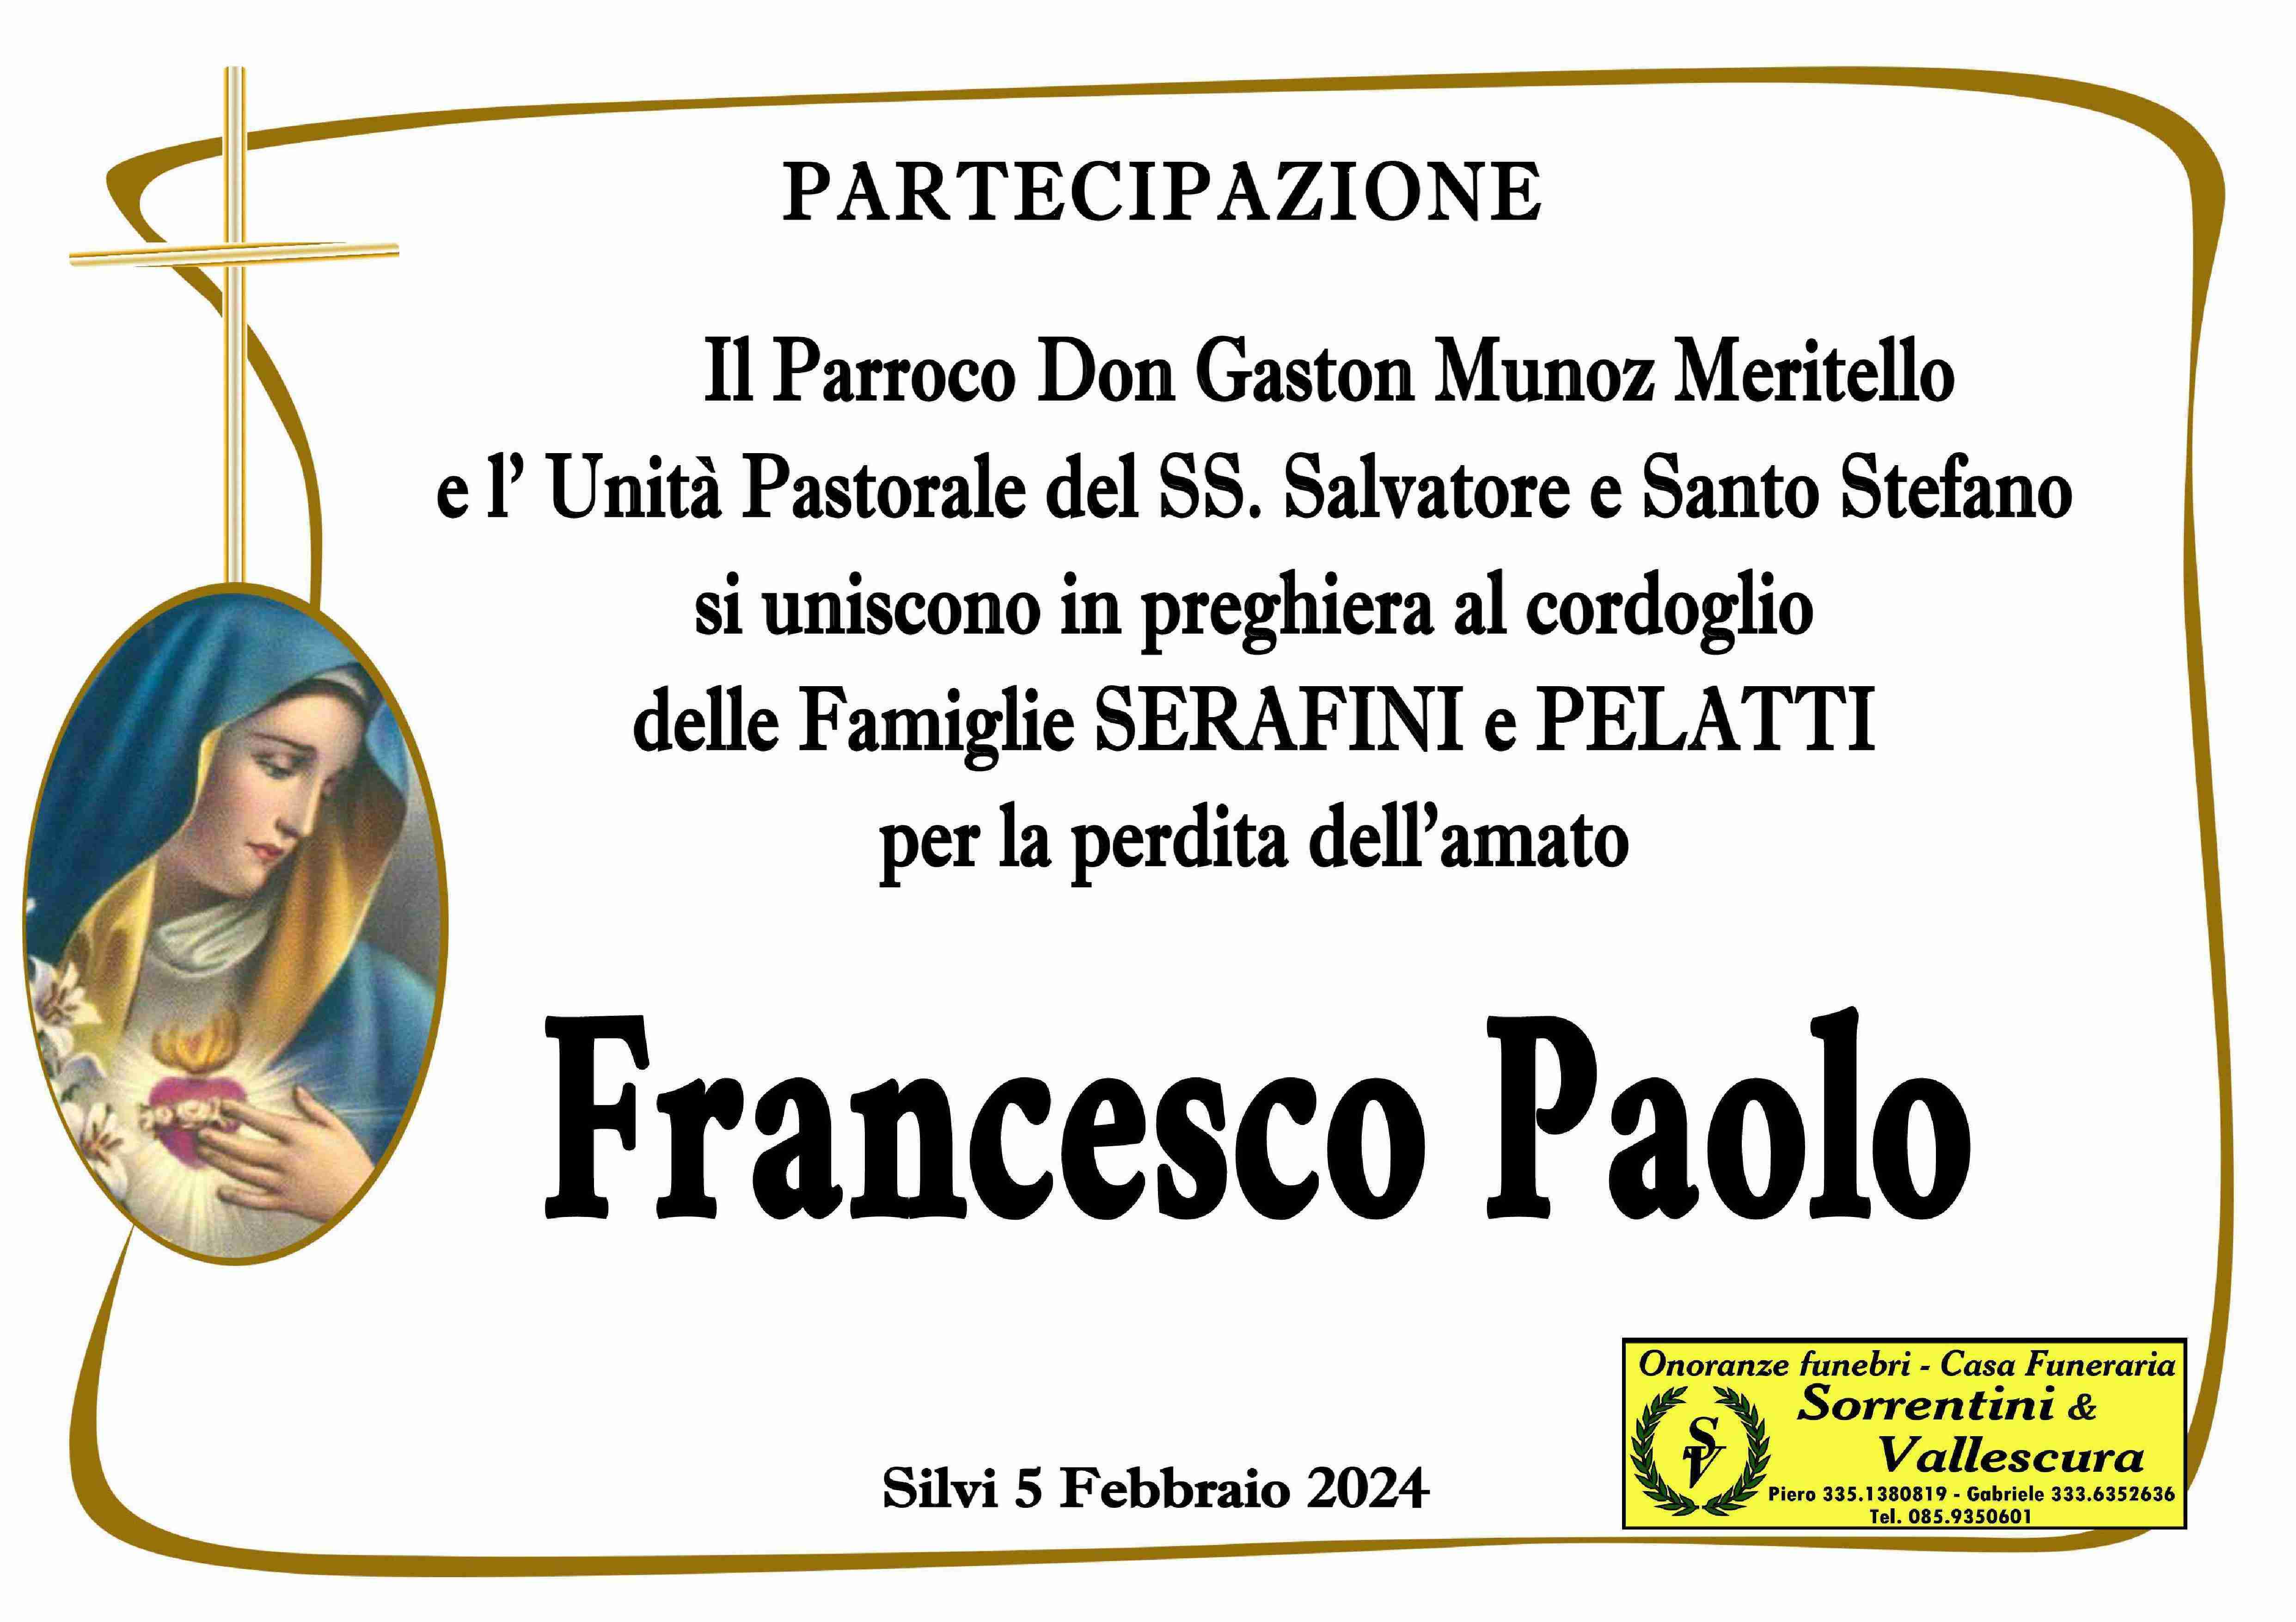 Francesco Paolo Serafini